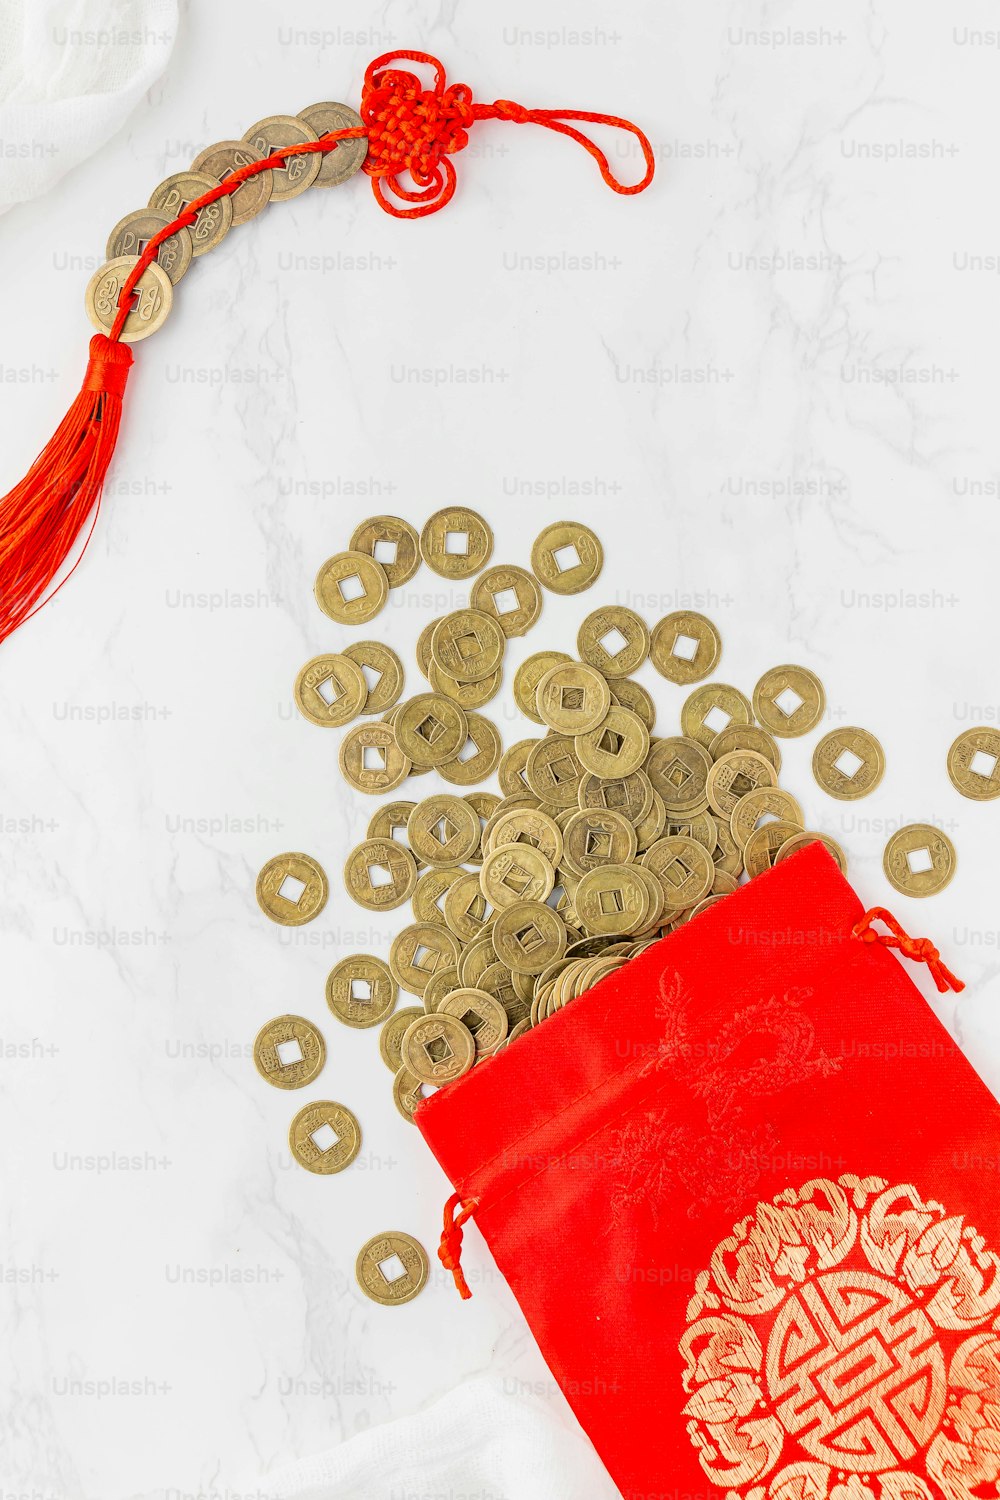 ein roter Beutel gefüllt mit Goldmünzen neben einem roten Beutel mit Goldmünzen